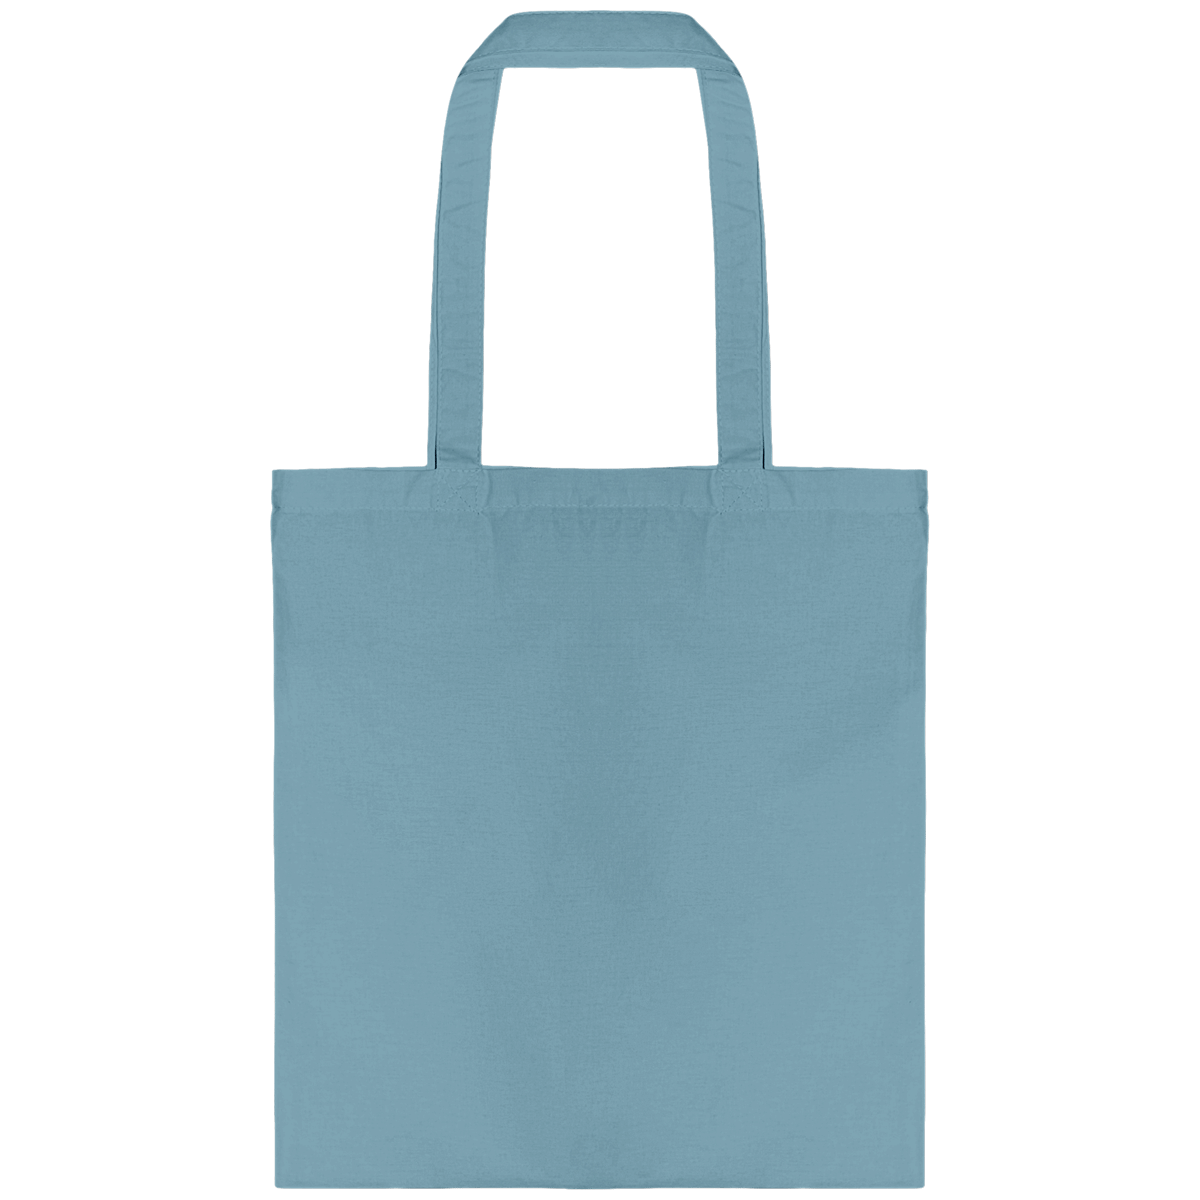 Personnalisez Votre Tote Bag Avec Tunetoo Delphinium Blue